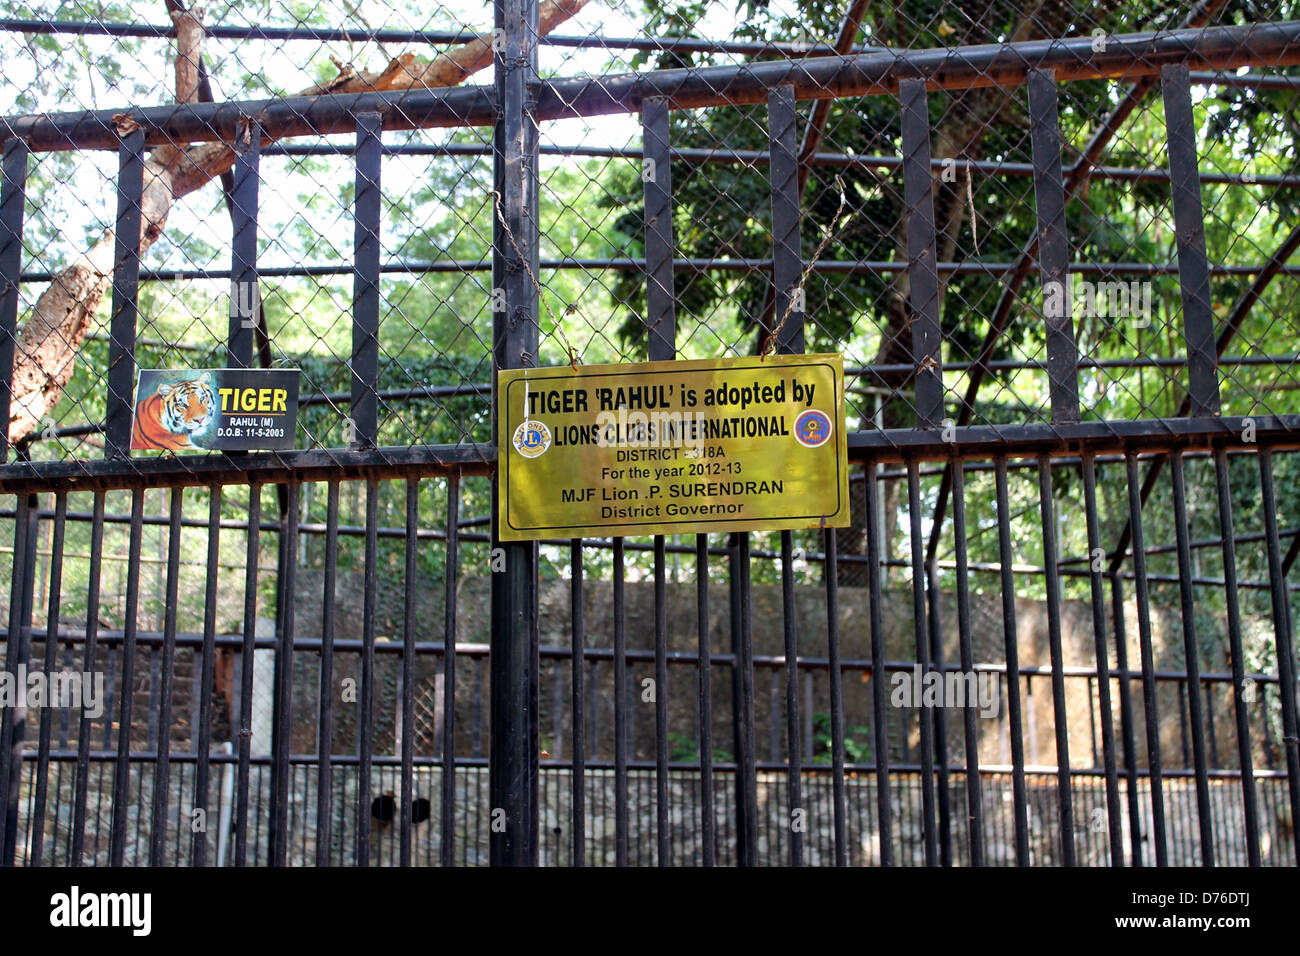 Affiche du conseil dans la cage d'un tigre indiquant que Tiger Rahul est été adopté par le Lions Club International Banque D'Images